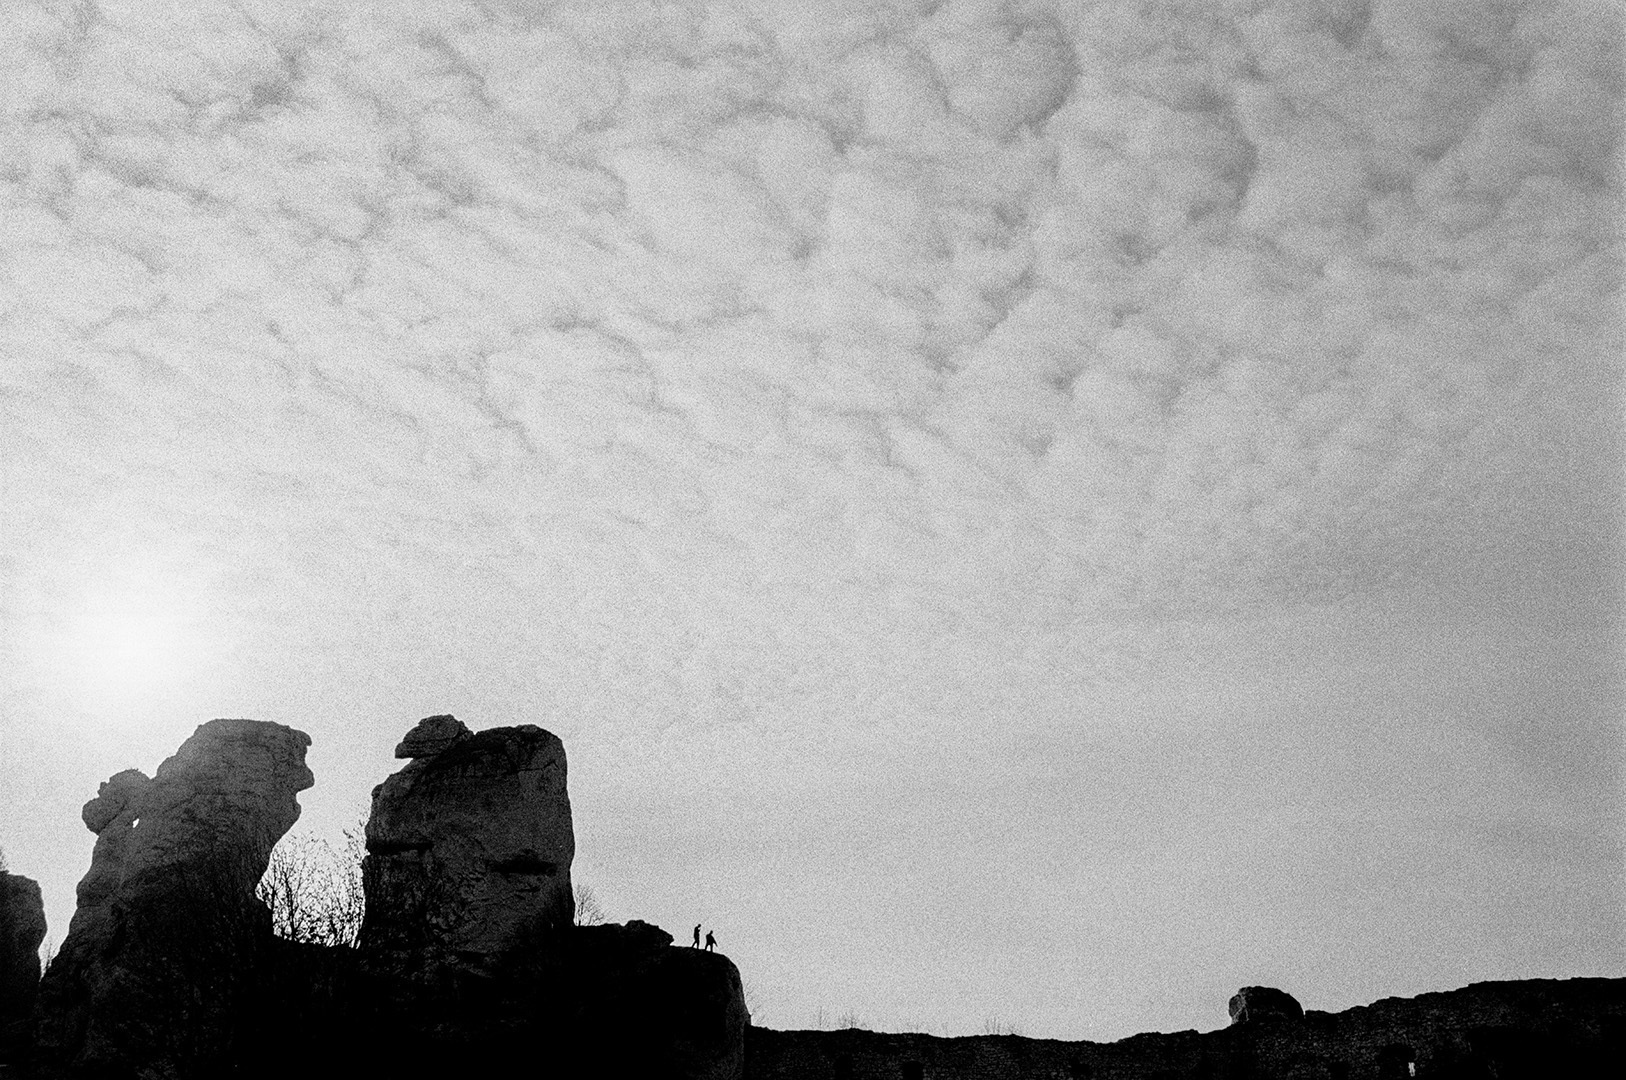 Zamek Ogrodzieniec 2004, Fujifilm Neopan 1600, Nikon FM2n + Nikkor AIS 35/f2, ruiny zamku, niebo w chmurach, cirrus, krajobraz, fotografia czarno-biała, fotografia srebrowa, fotografia tradycyjna 